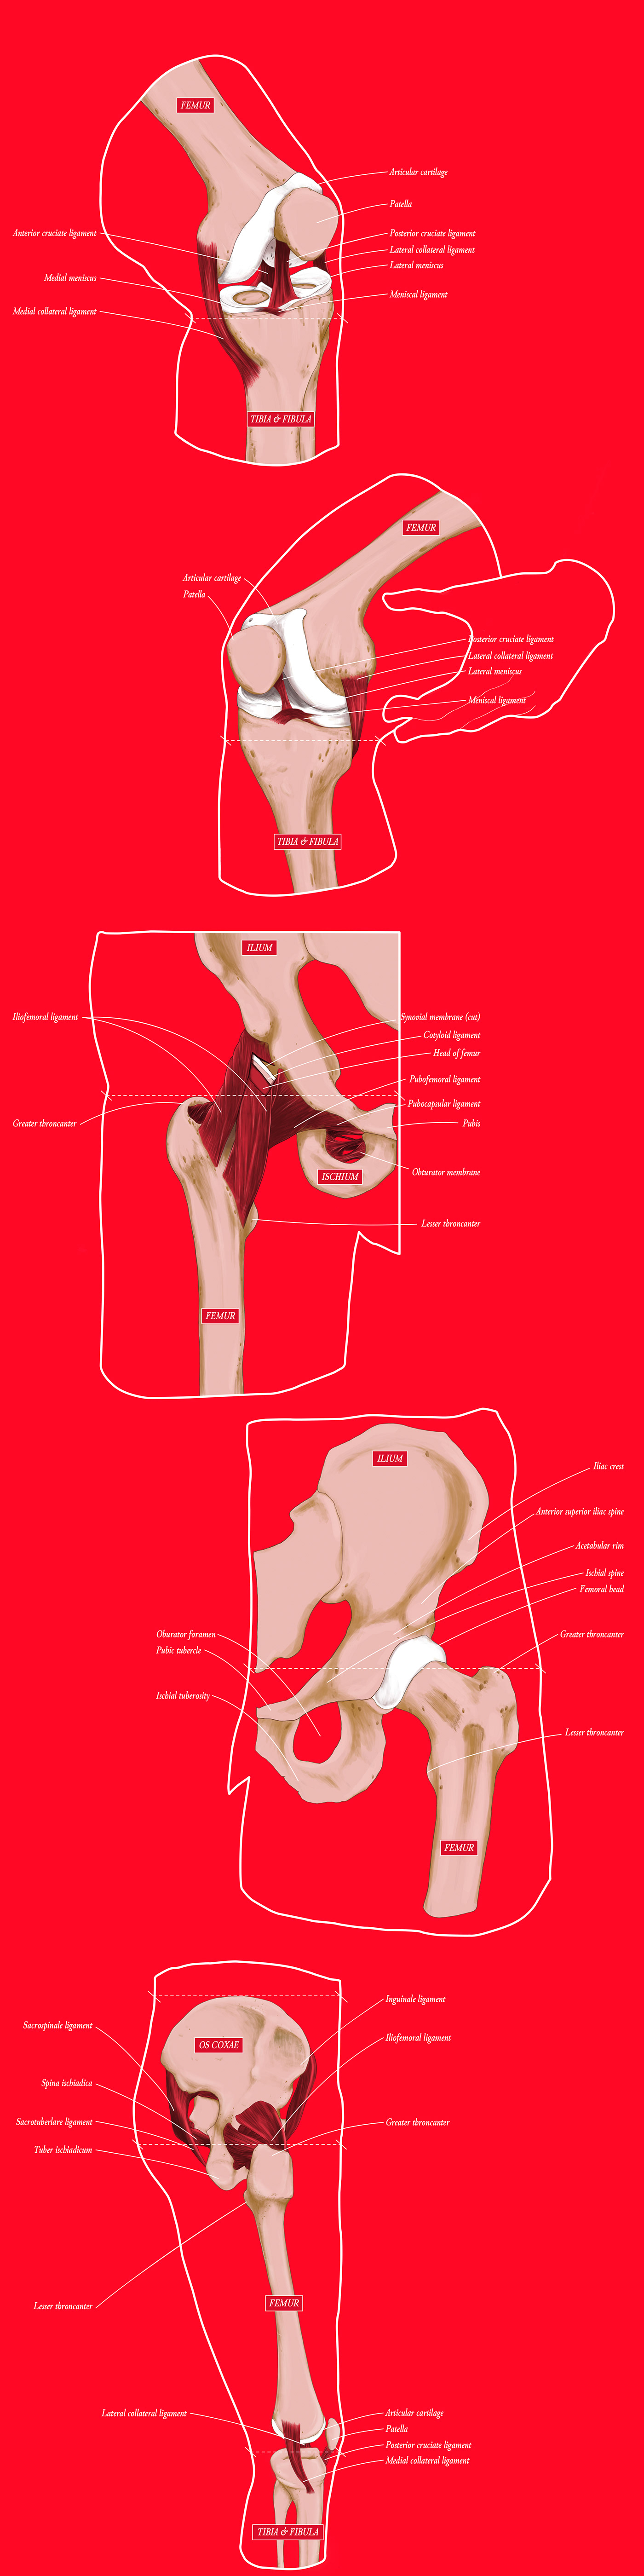 anatomy anatomy illustration Health joints medical medical illustration science scientific illustration